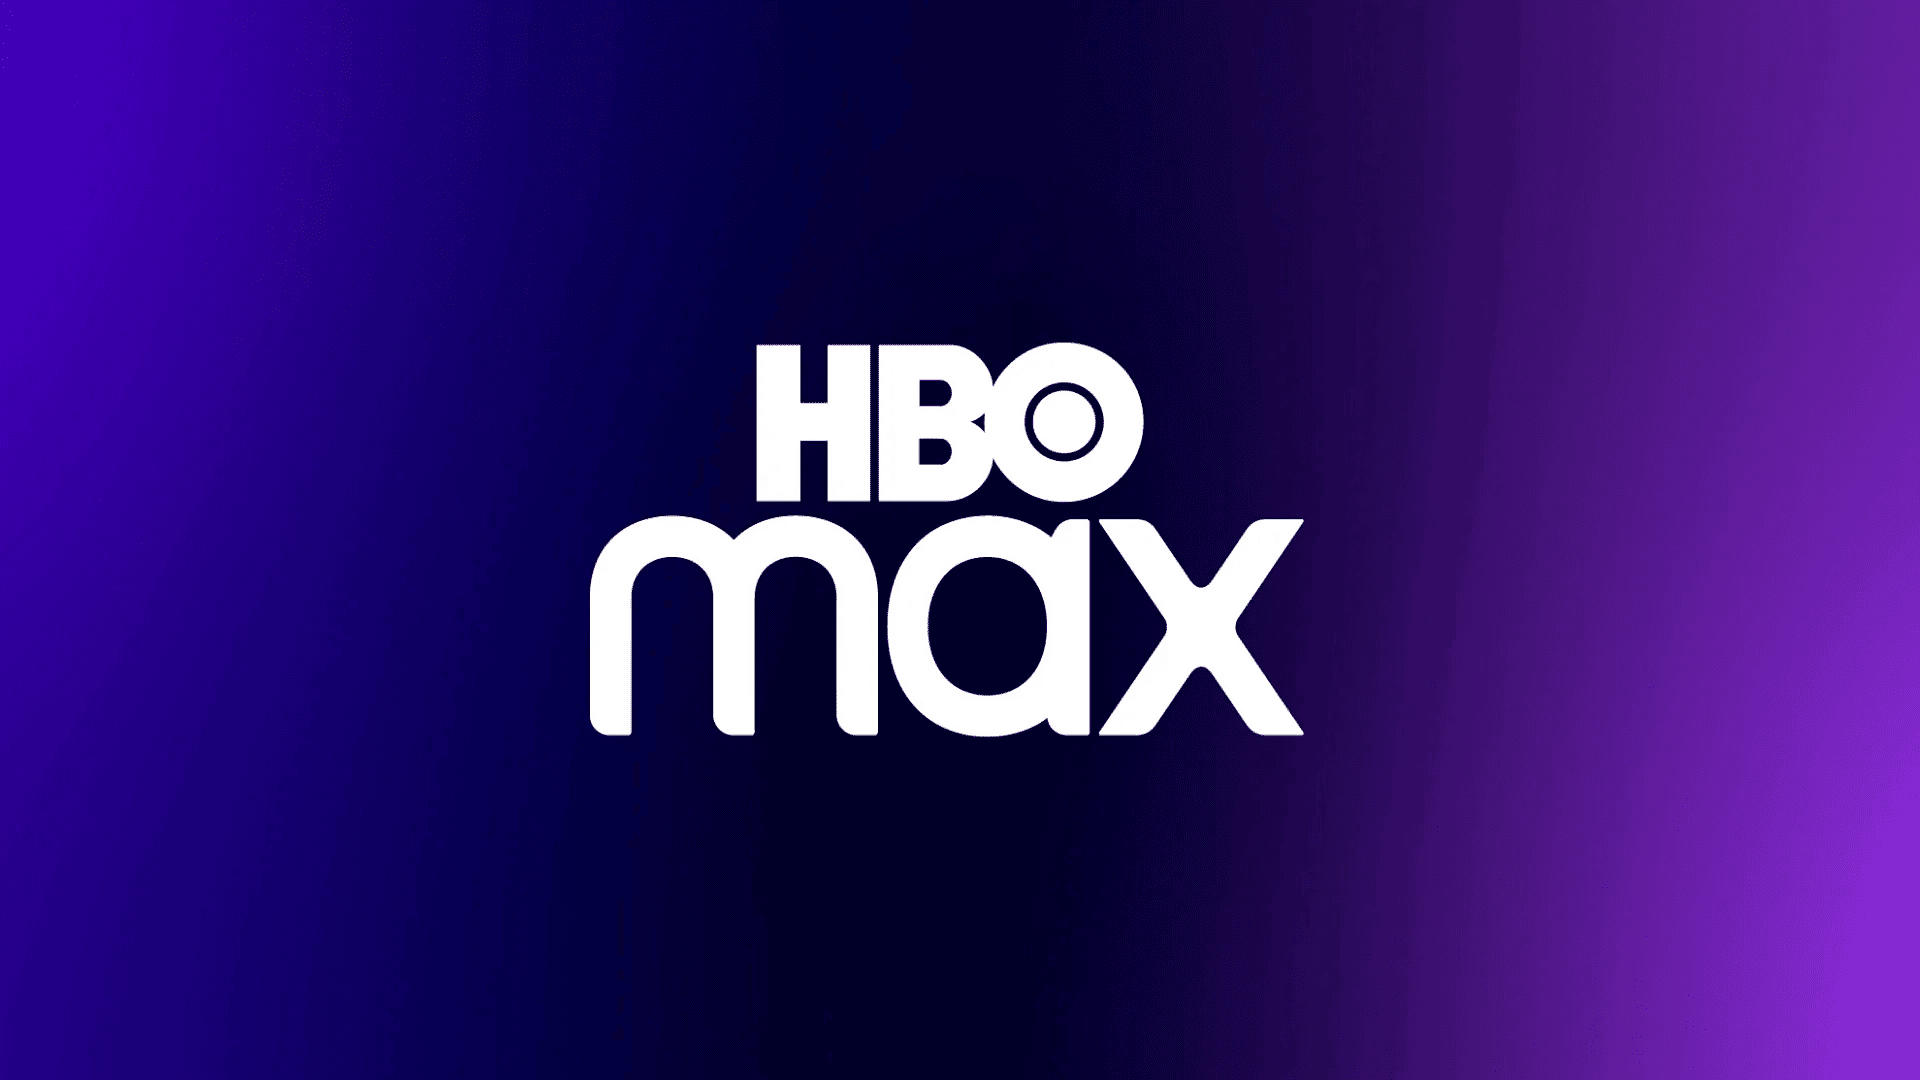 Todos estes filmes e séries serão RETIRADOS da HBO Max em JANEIRO